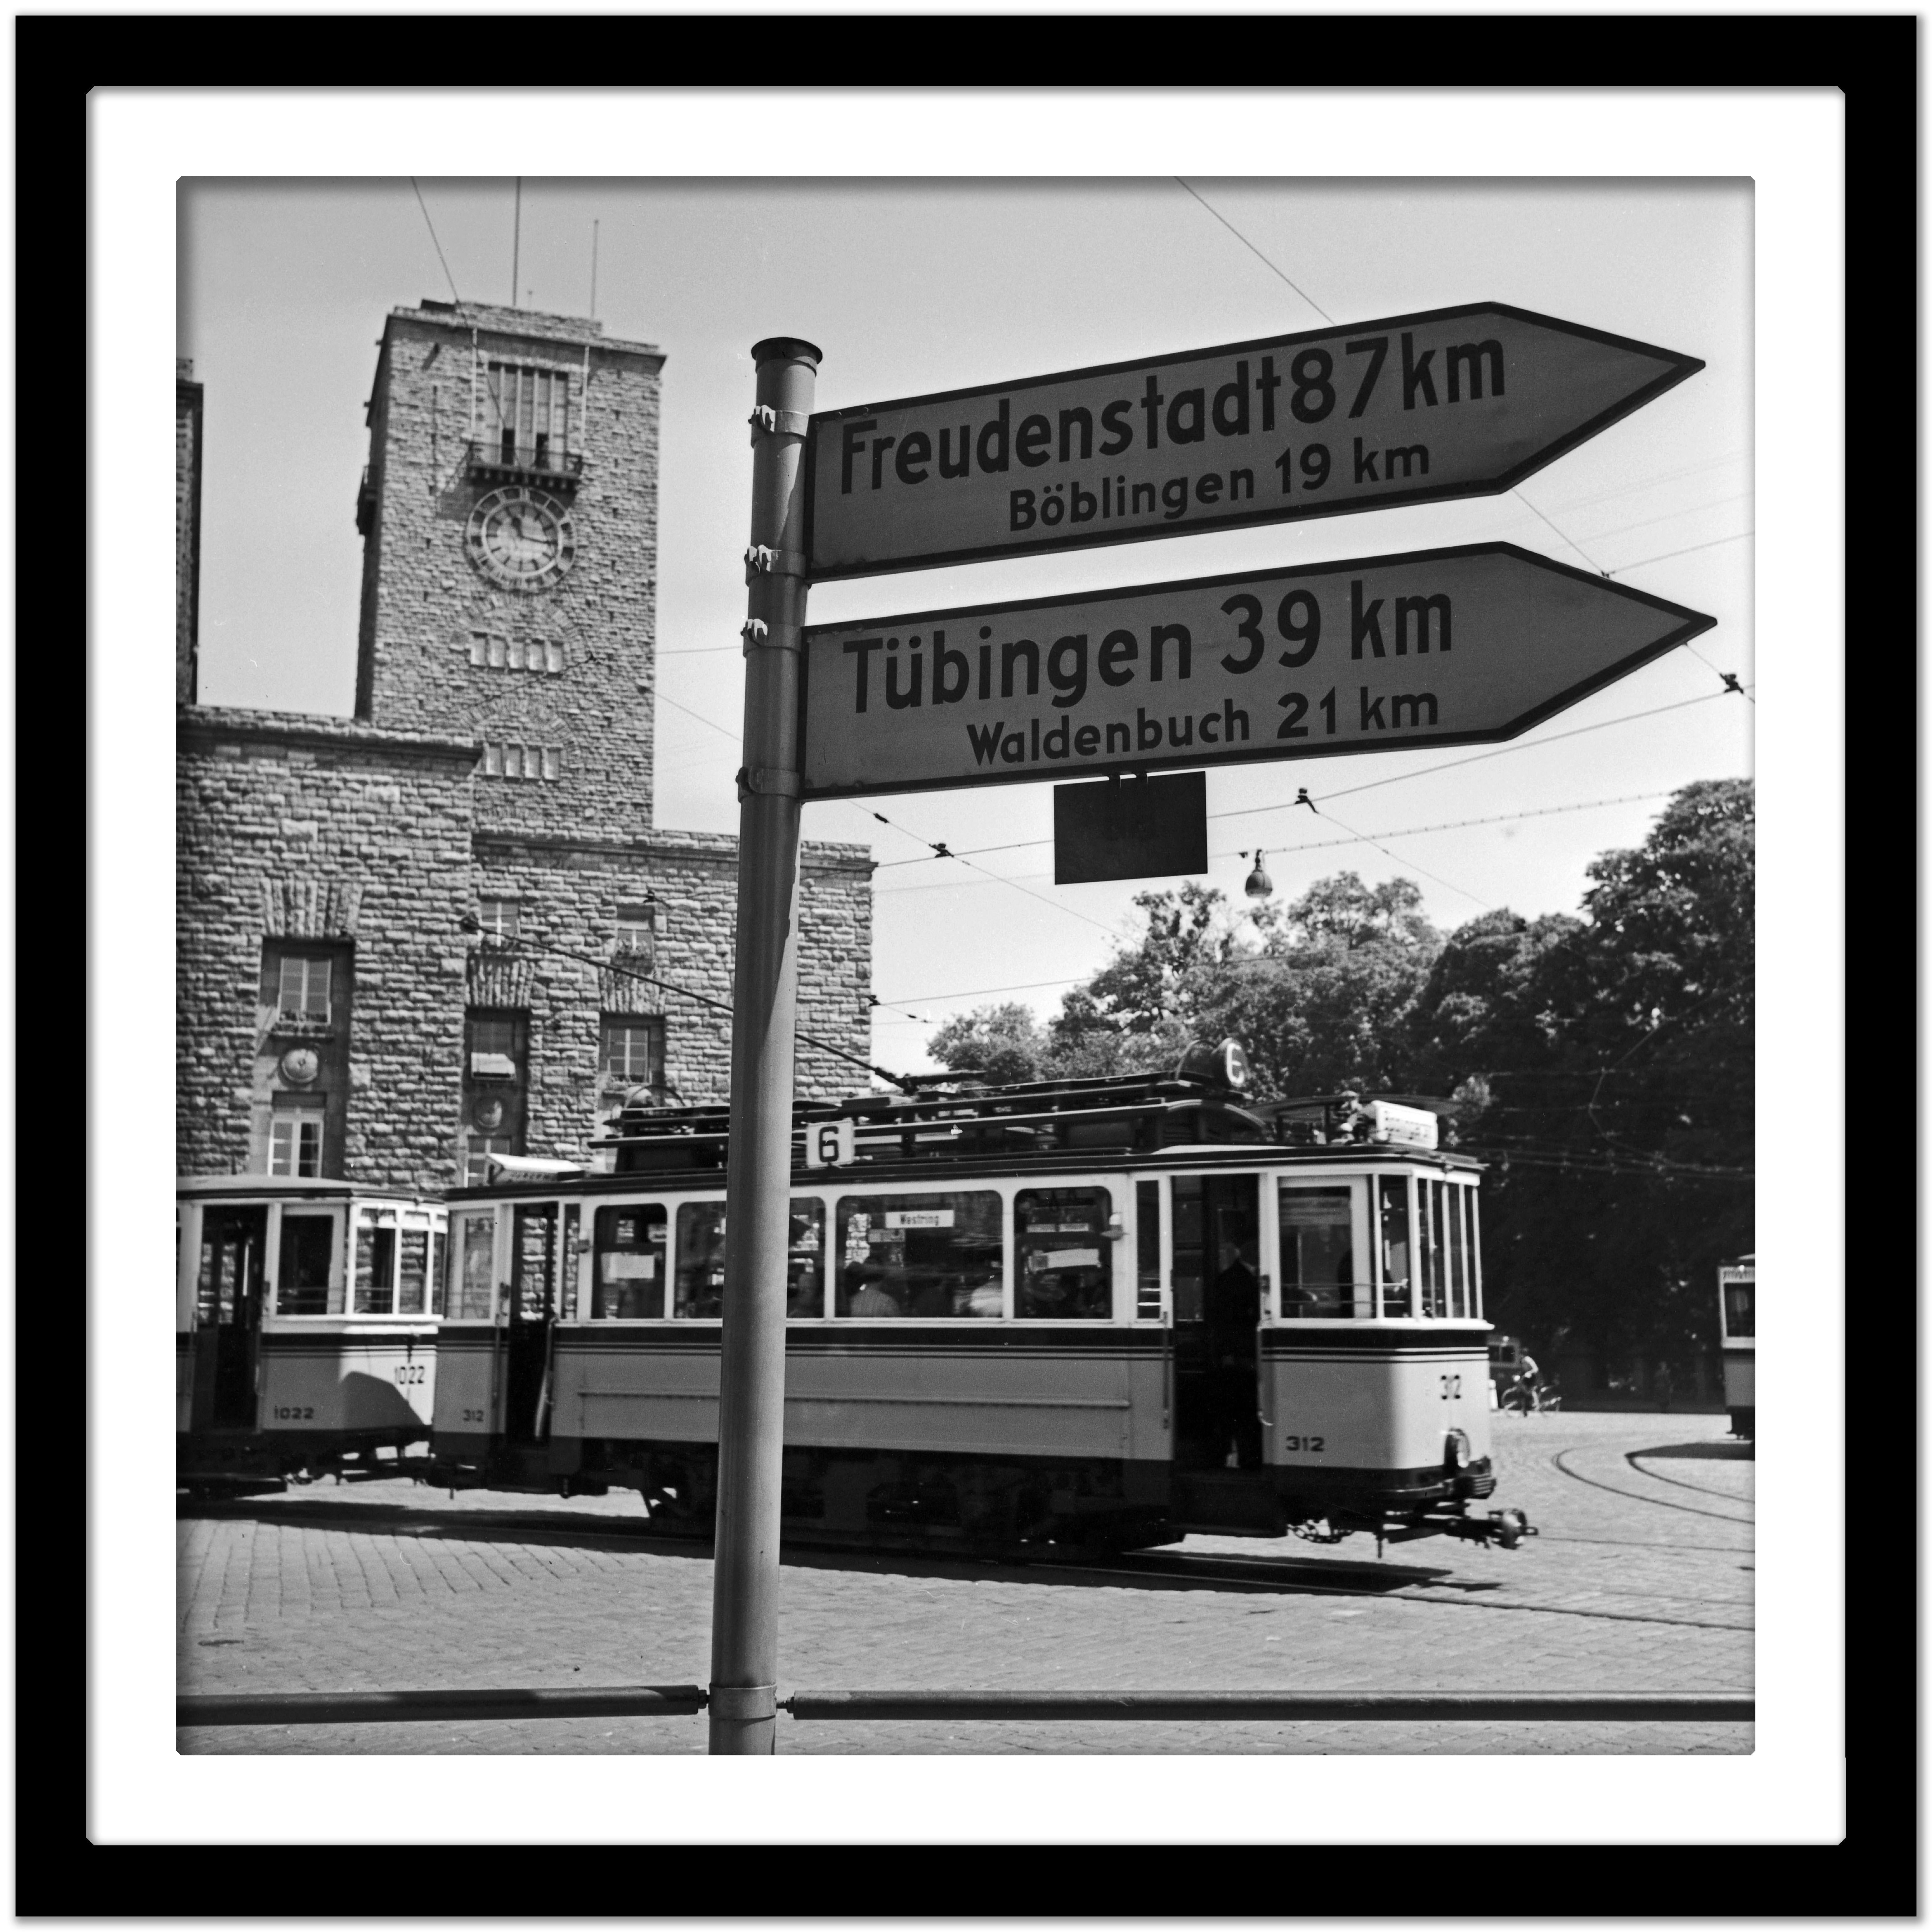 Ligne de Tram n° 6 de la gare principale, Stuttgart, Allemagne 1935, Imprimé ultérieurement - Noir Black and White Photograph par Karl Heinrich Lämmel